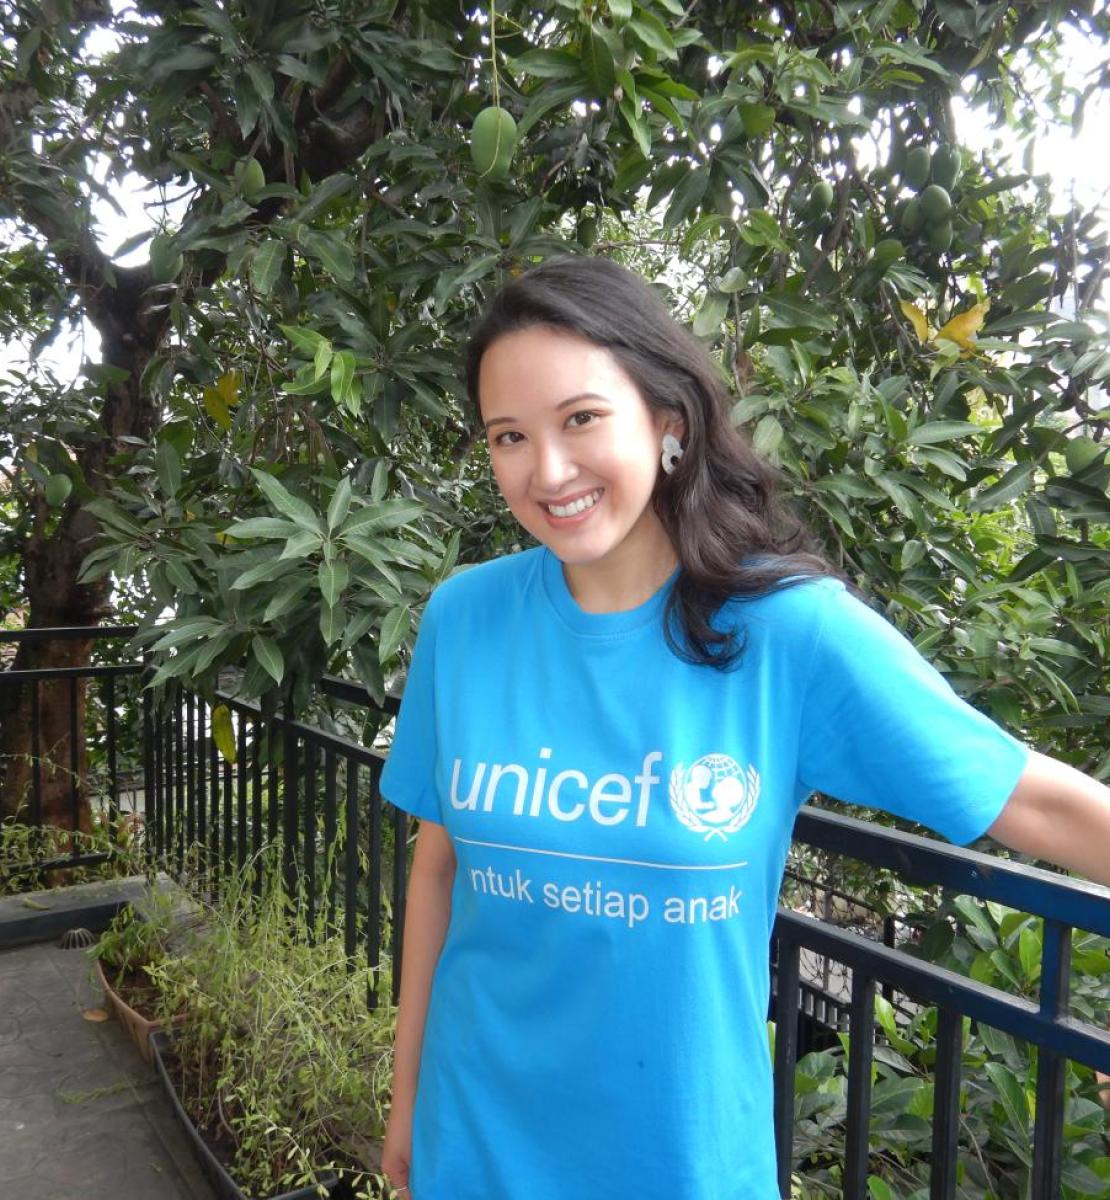 Una mujer mira con seguridad y sonríe a la cámara, usa una franela azul con el logo de UNICEF, y se encuentra en una espacio exterior, lleno de vegetación.